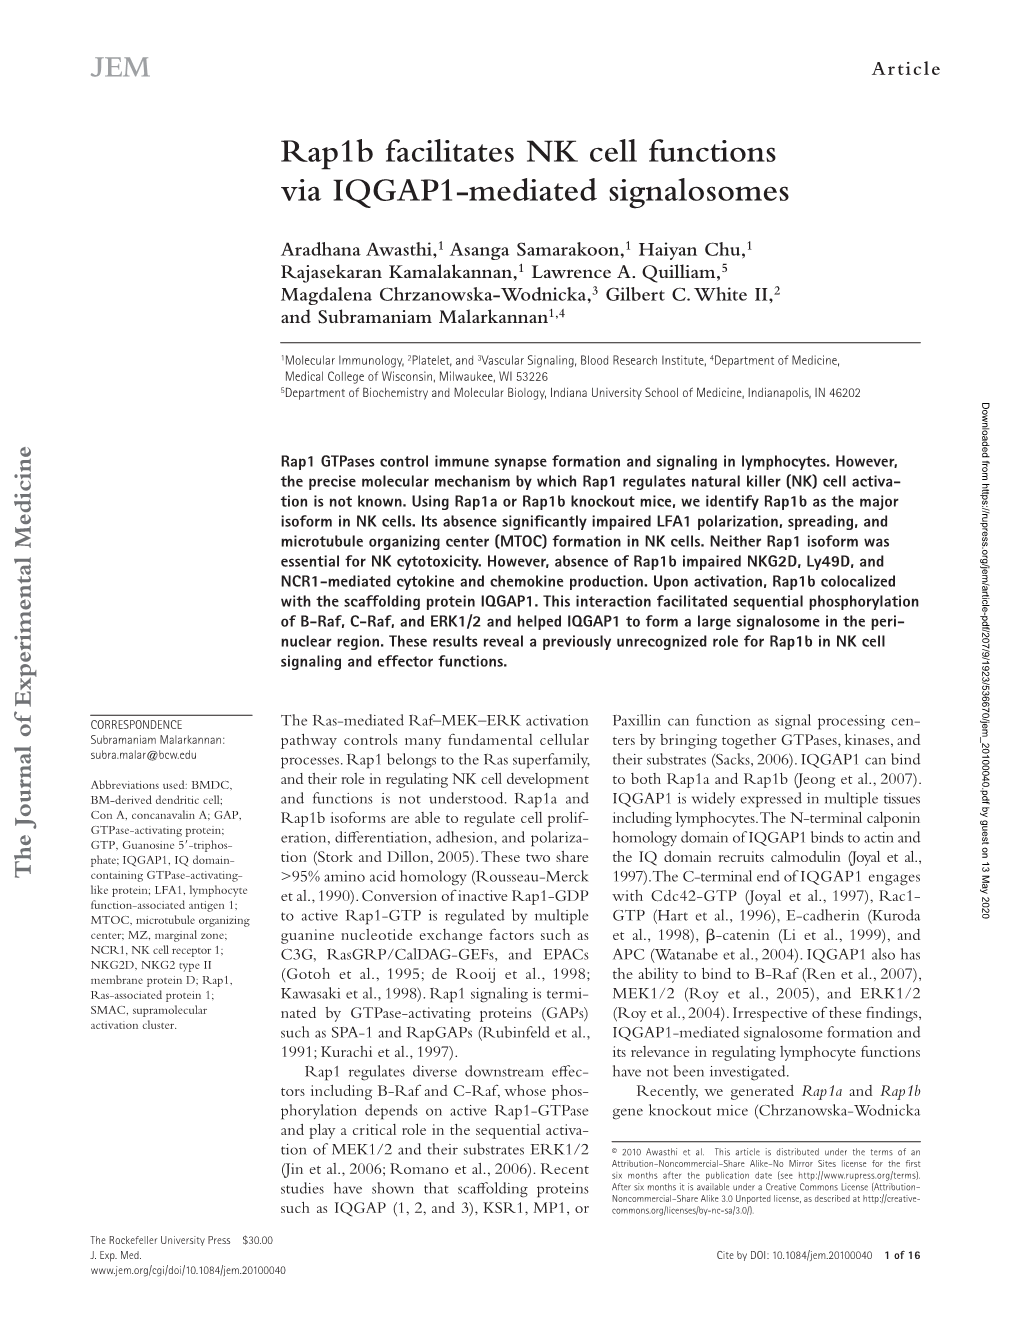 Rap1b Facilitates NK Cell Functions Via IQGAP1-Mediated Signalosomes